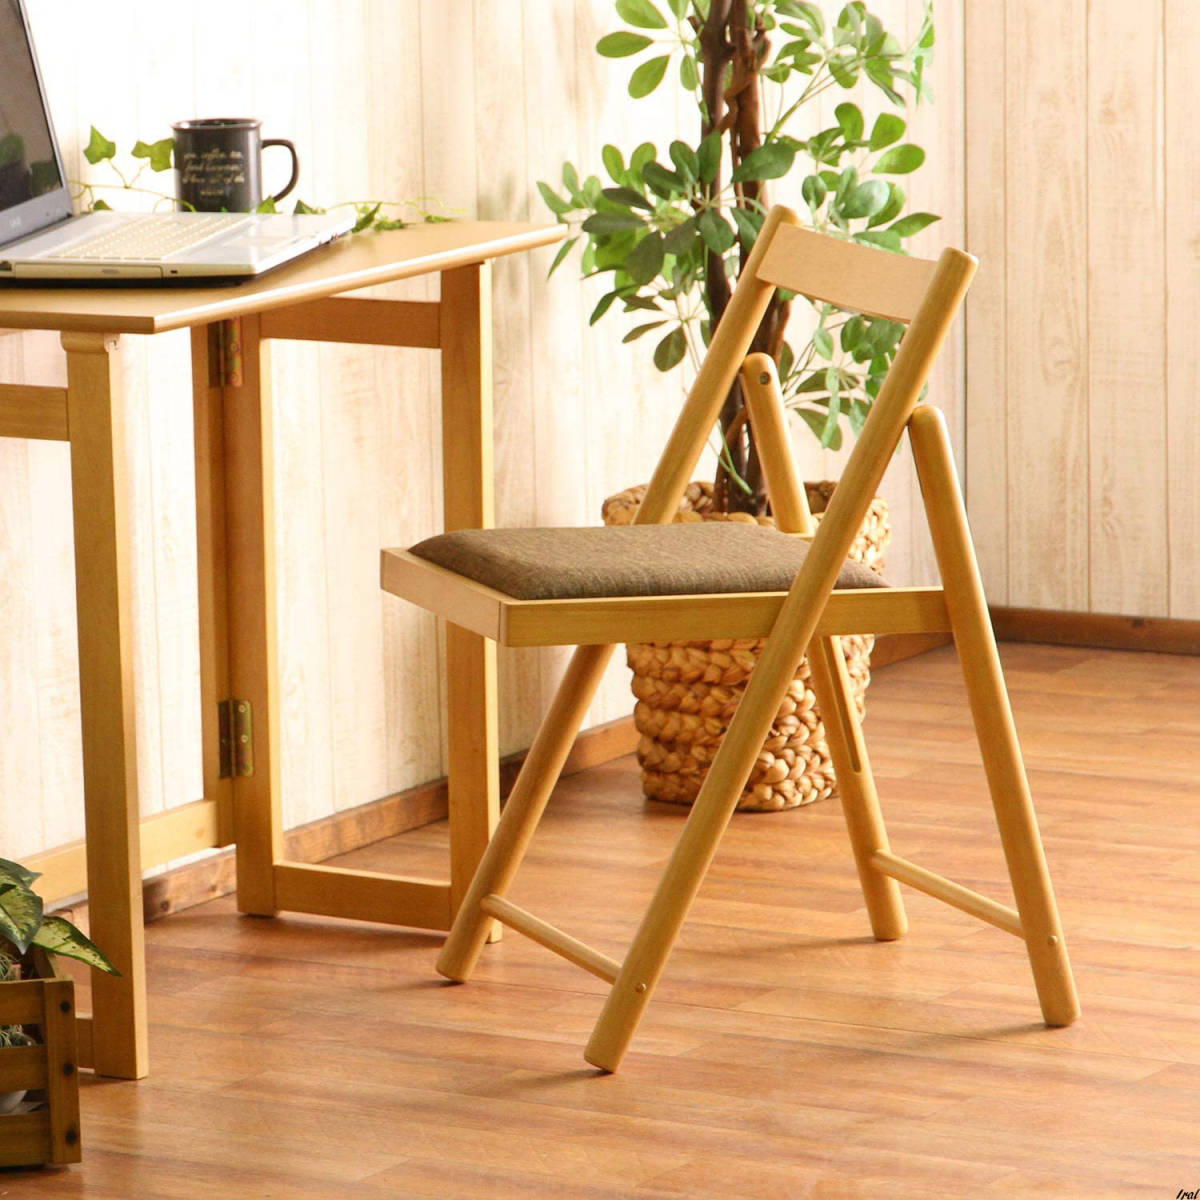 折りたたみチェア 椅子 幅43×奥行53×高さ70cm ナチュラル 木製 コンパクト